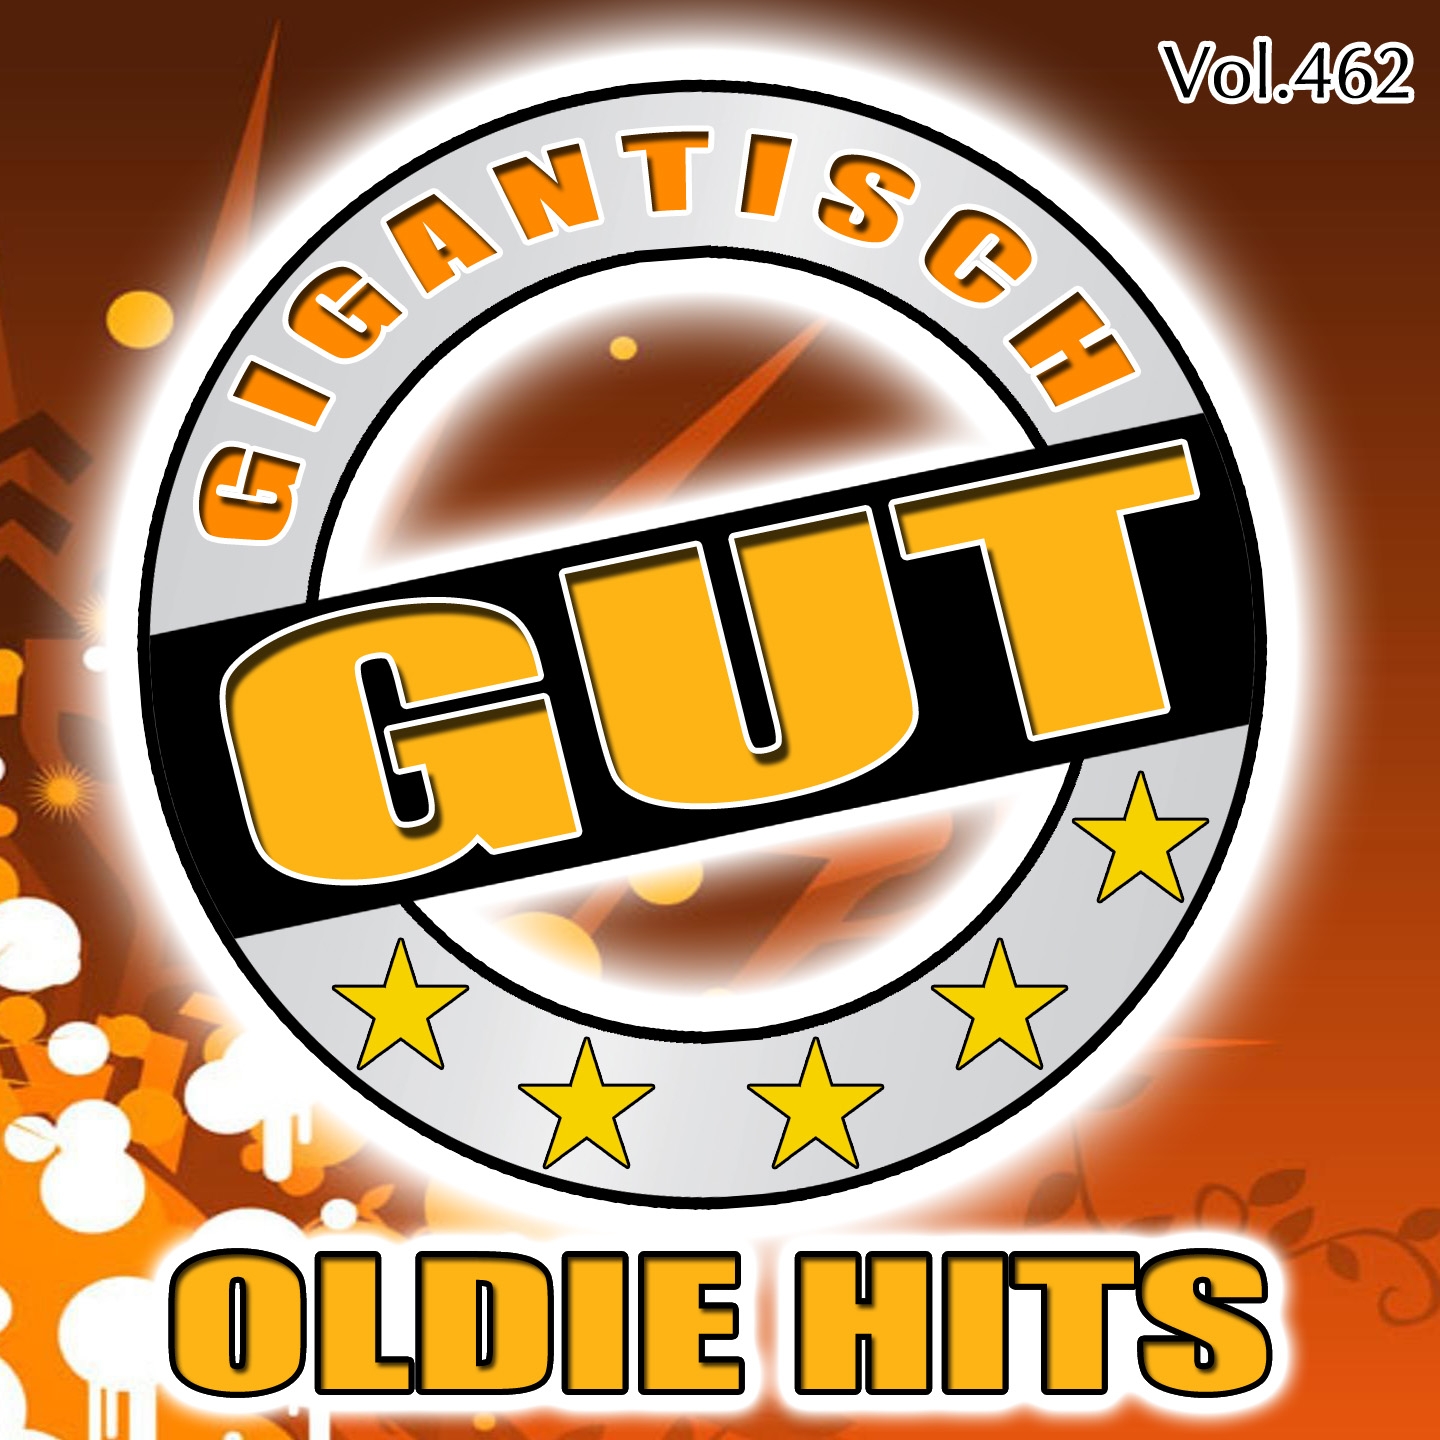 Gigantisch Gut: Oldie Hits, Vol. 462